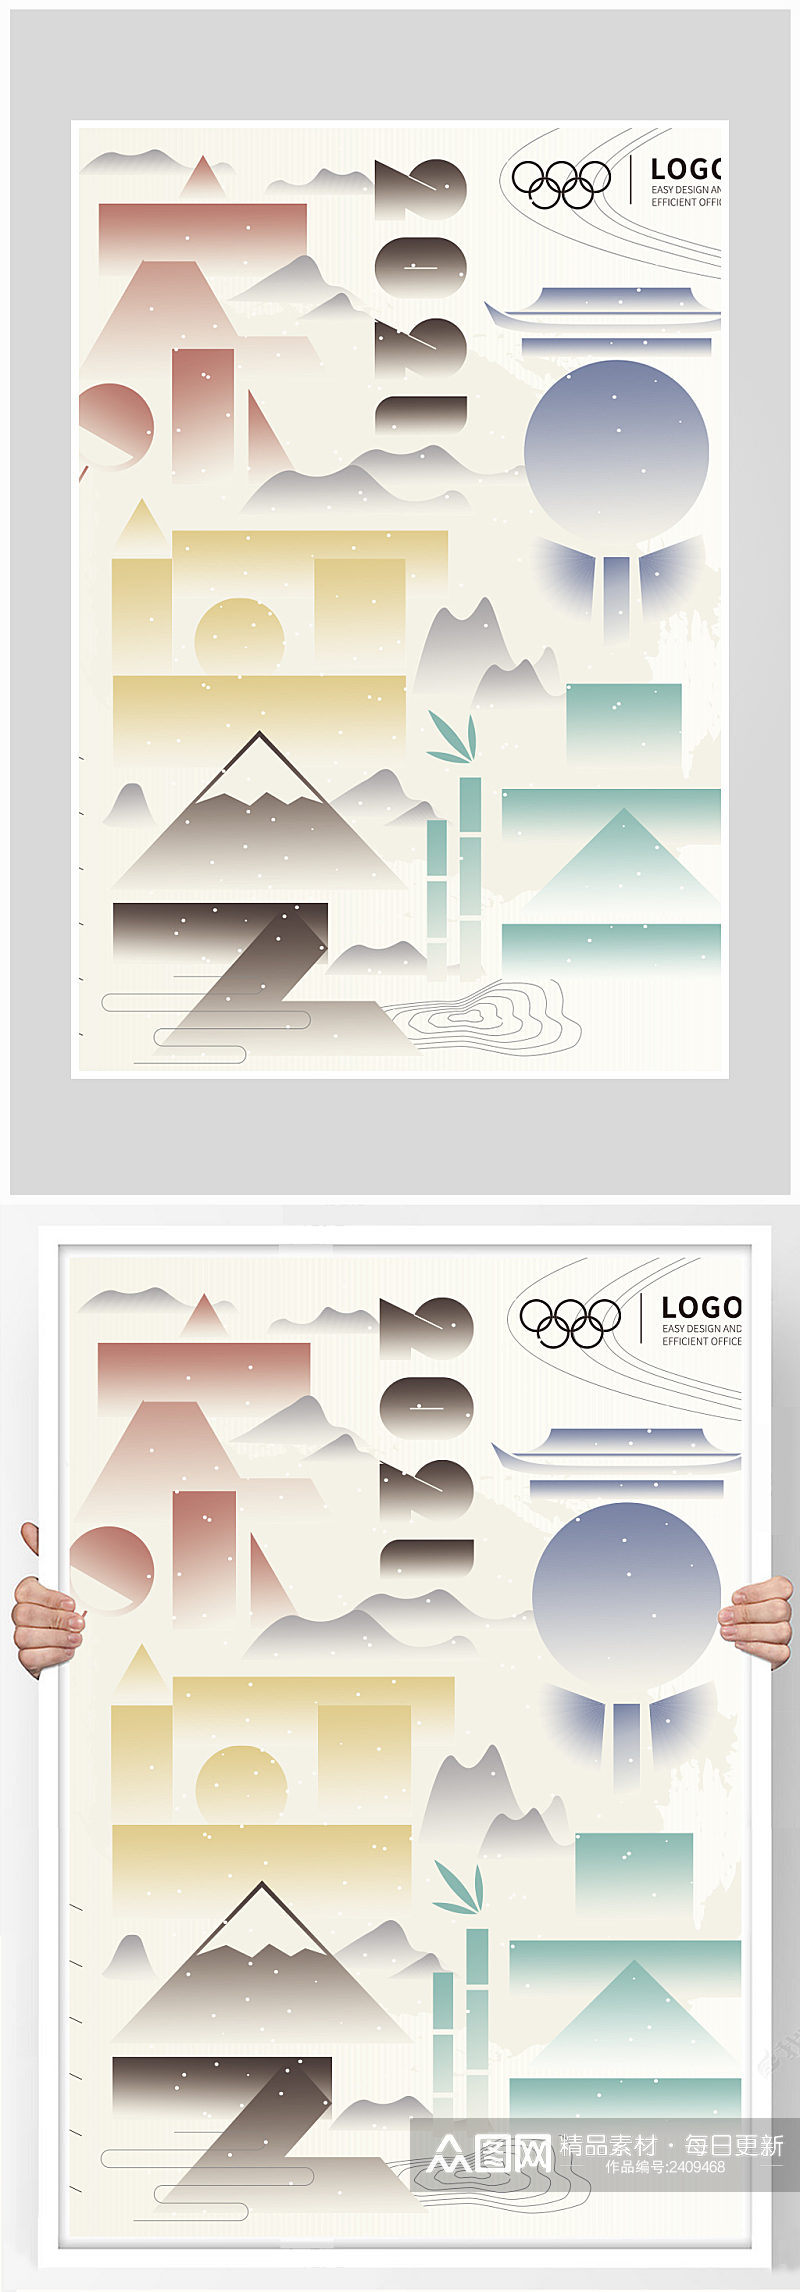 创意大气东京奥运会比赛海报设计素材